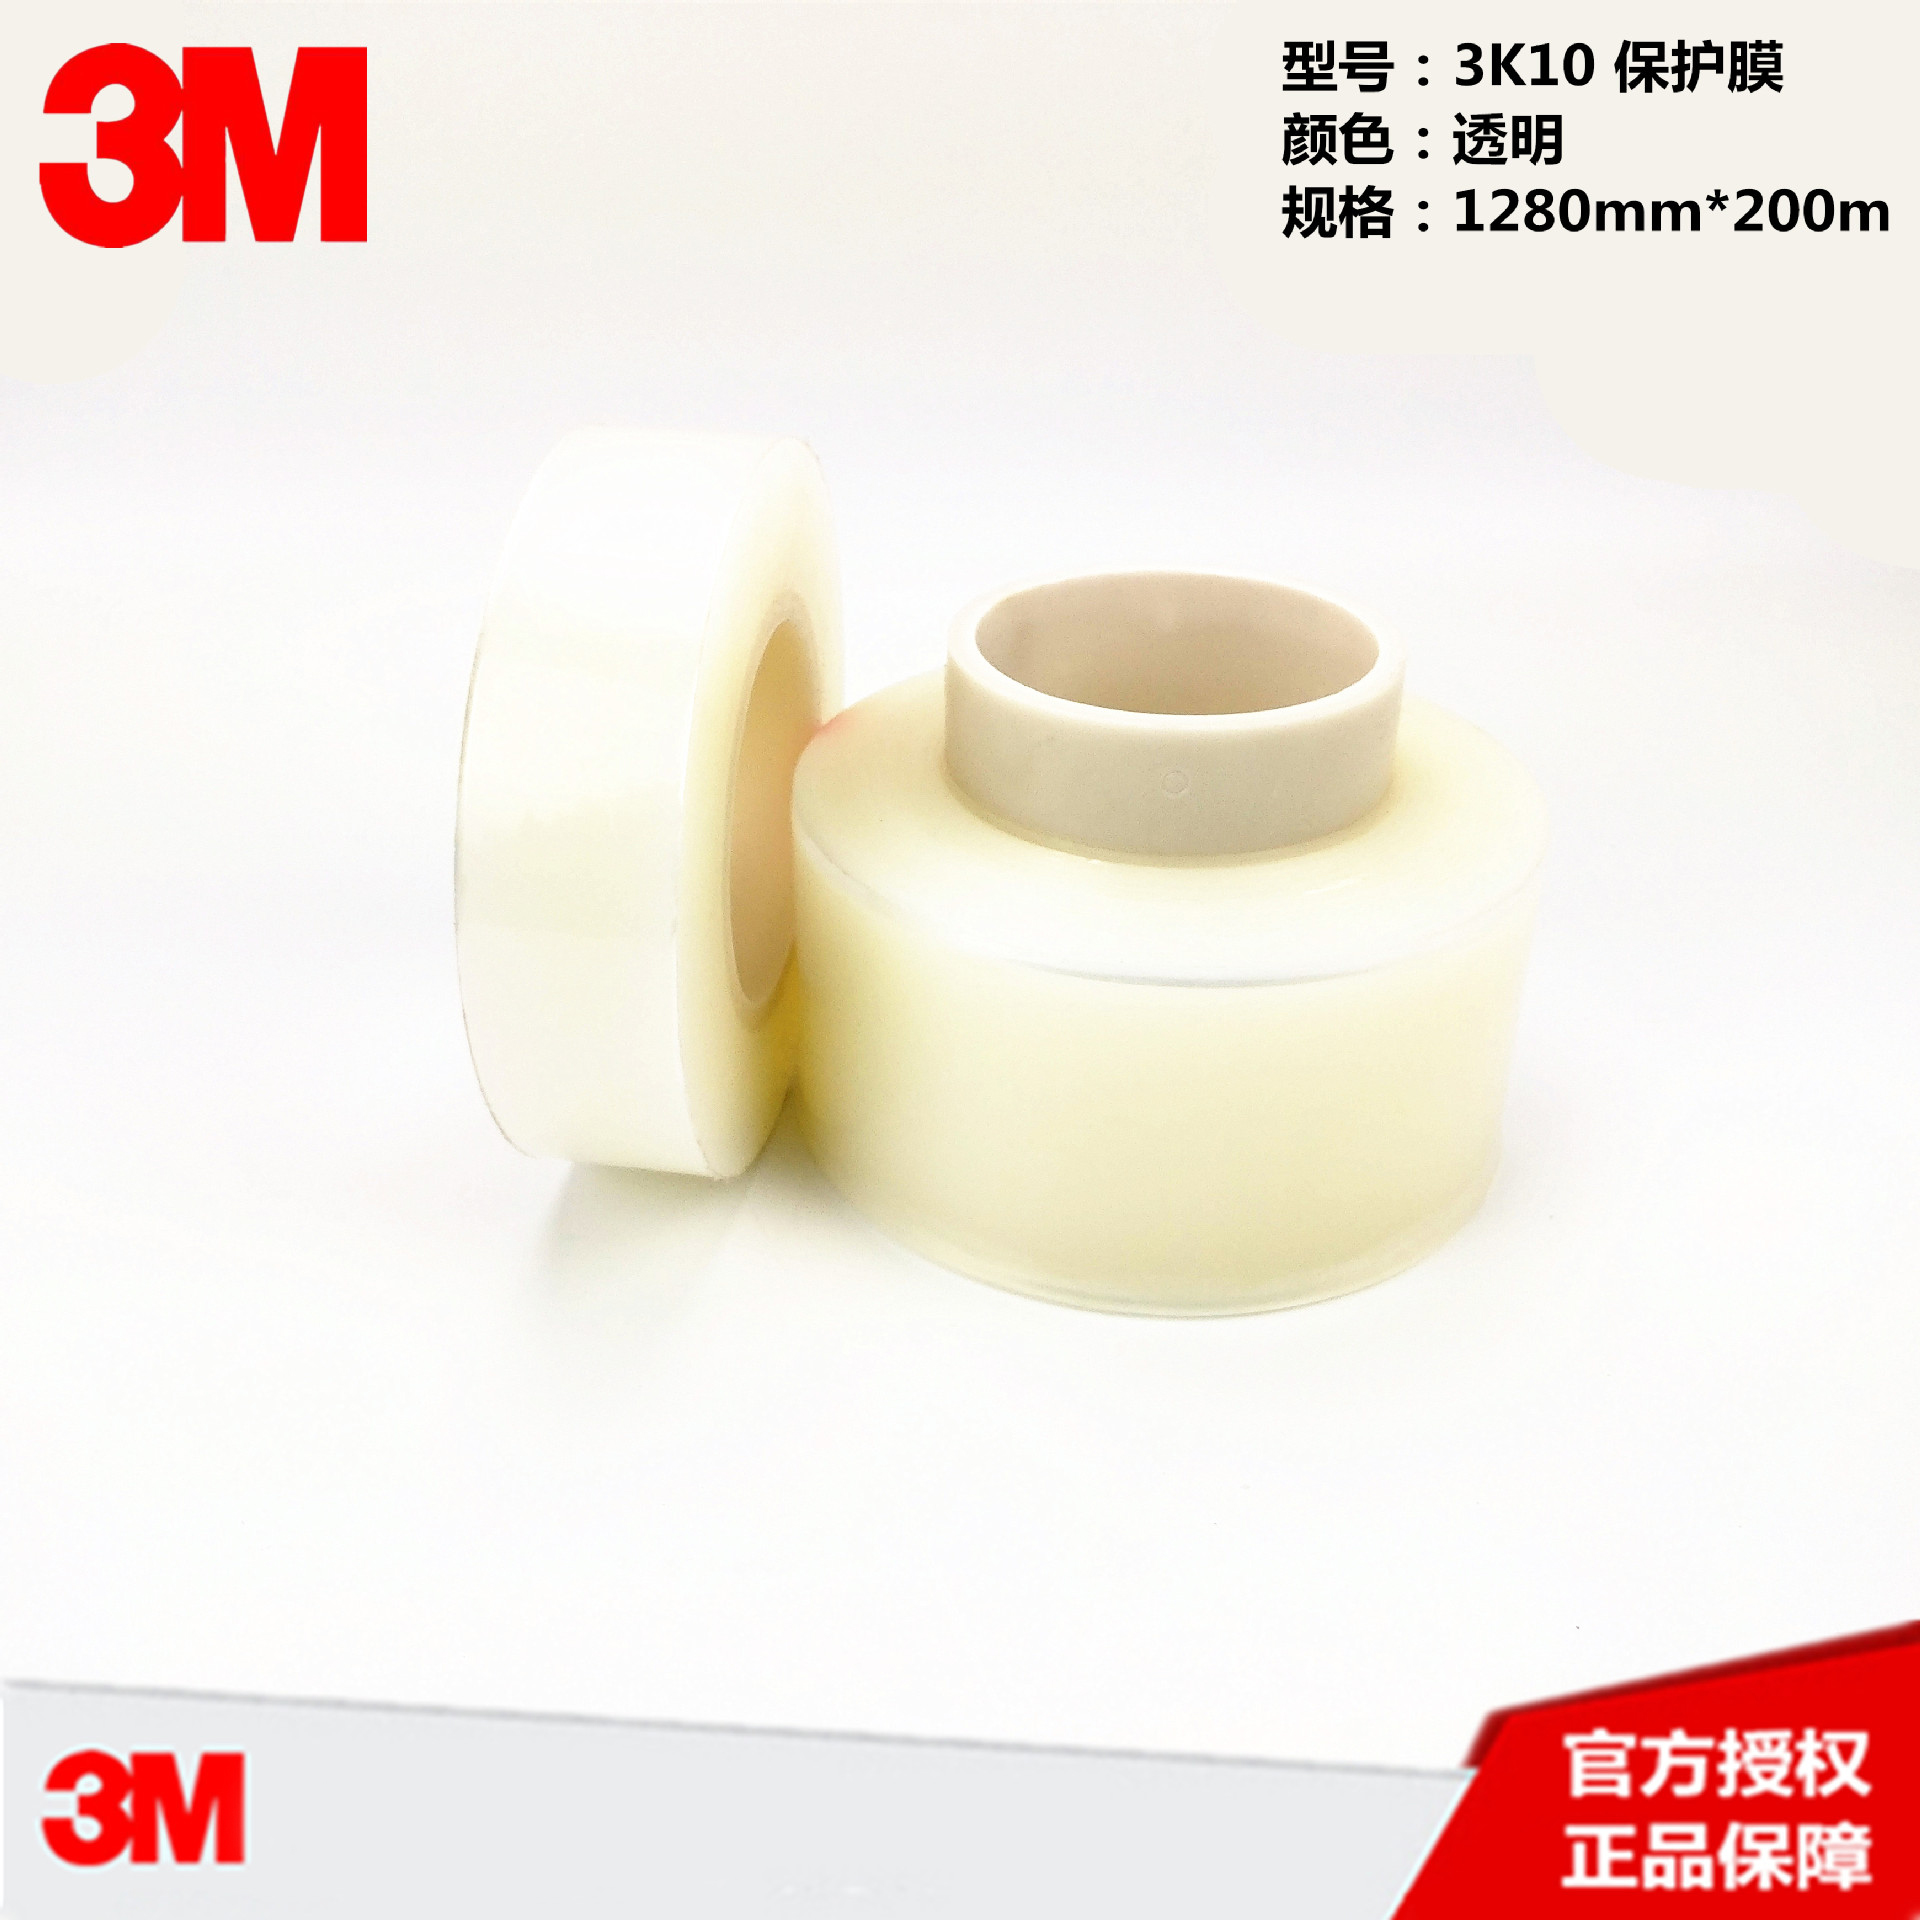 3M 3K10透明保护膜胶带